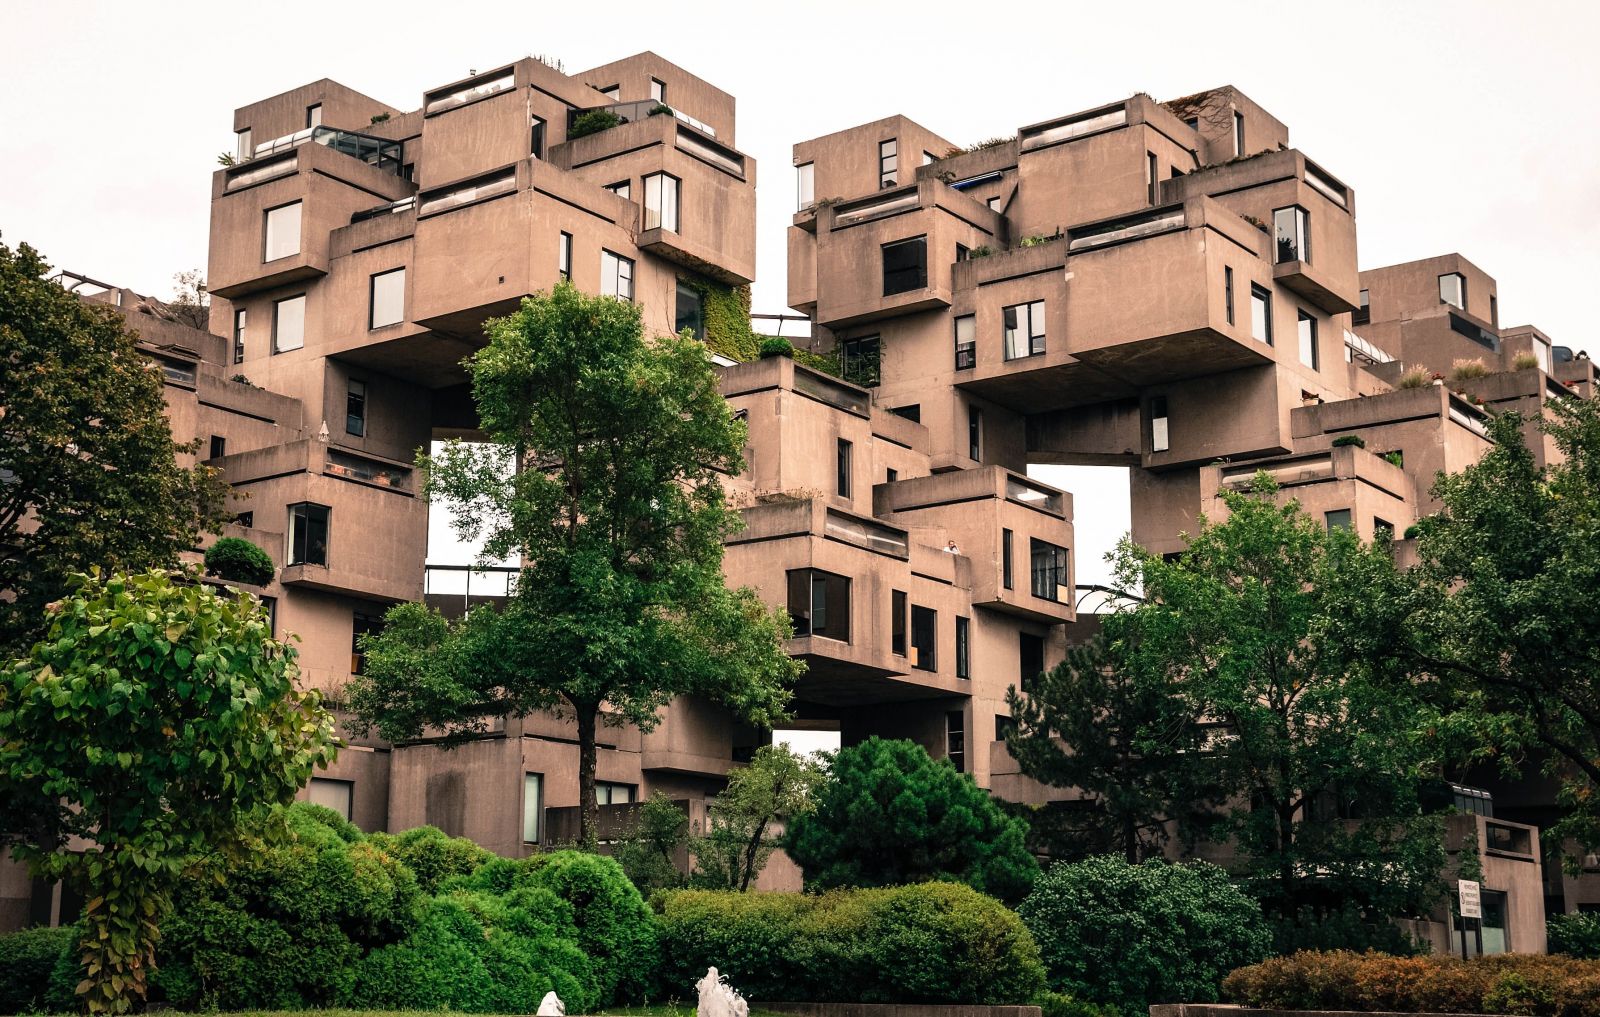 Podivné architektonické experimenty nebo vznešené monumenty? Utopický brutalismus je jedním z nejpozoruhodnějších stavebních stylů